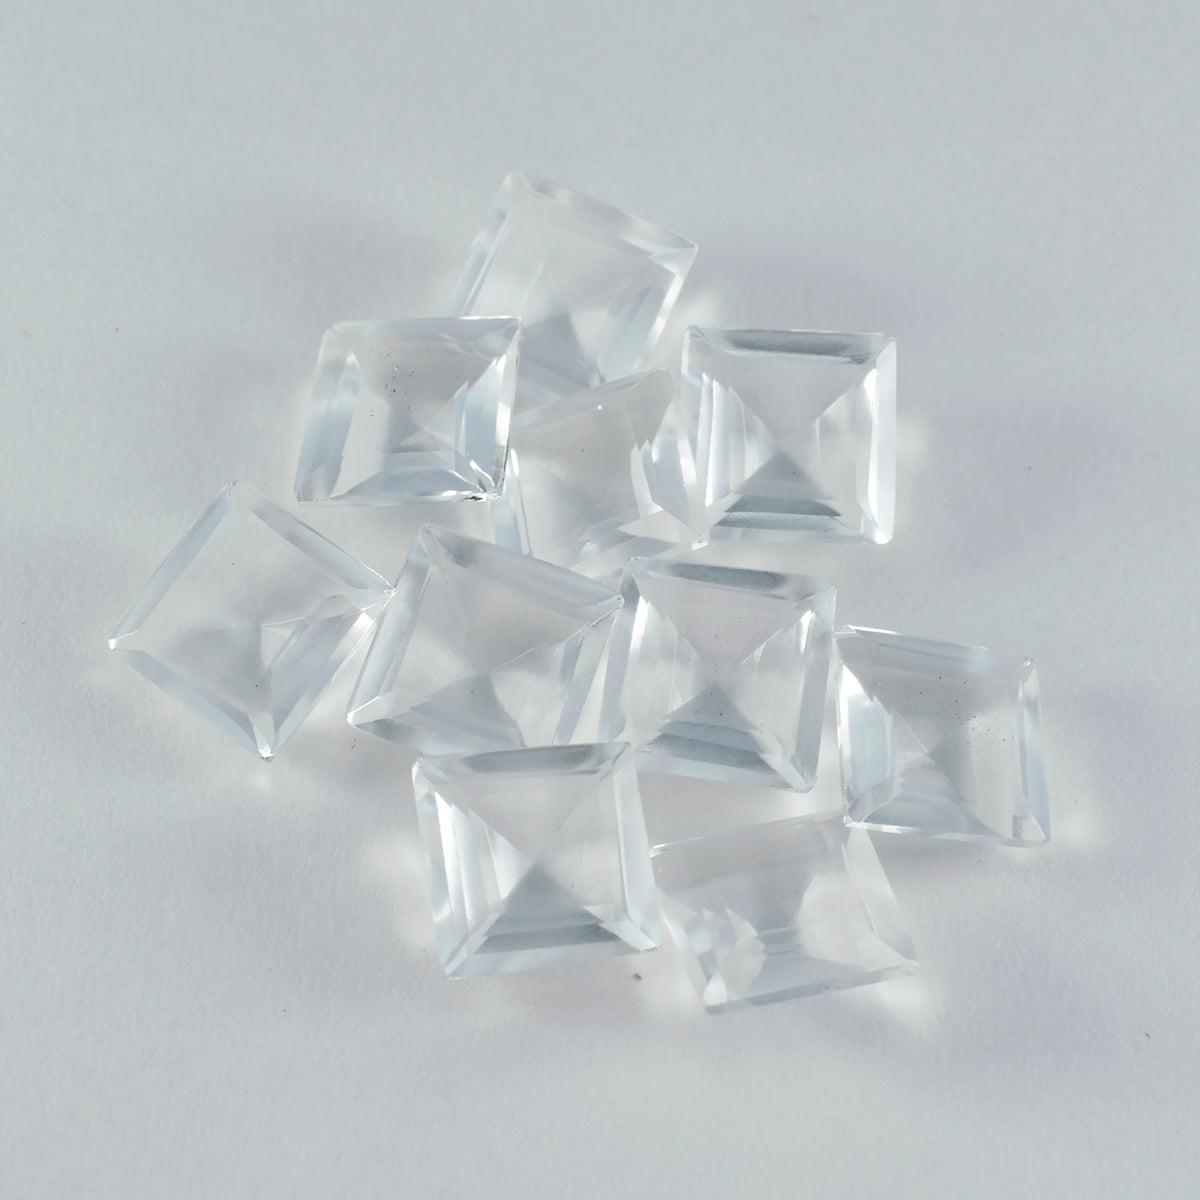 riyogems 1 шт., белый кристалл кварца, граненый 12x12 мм, квадратная форма, прекрасное качество, свободный драгоценный камень